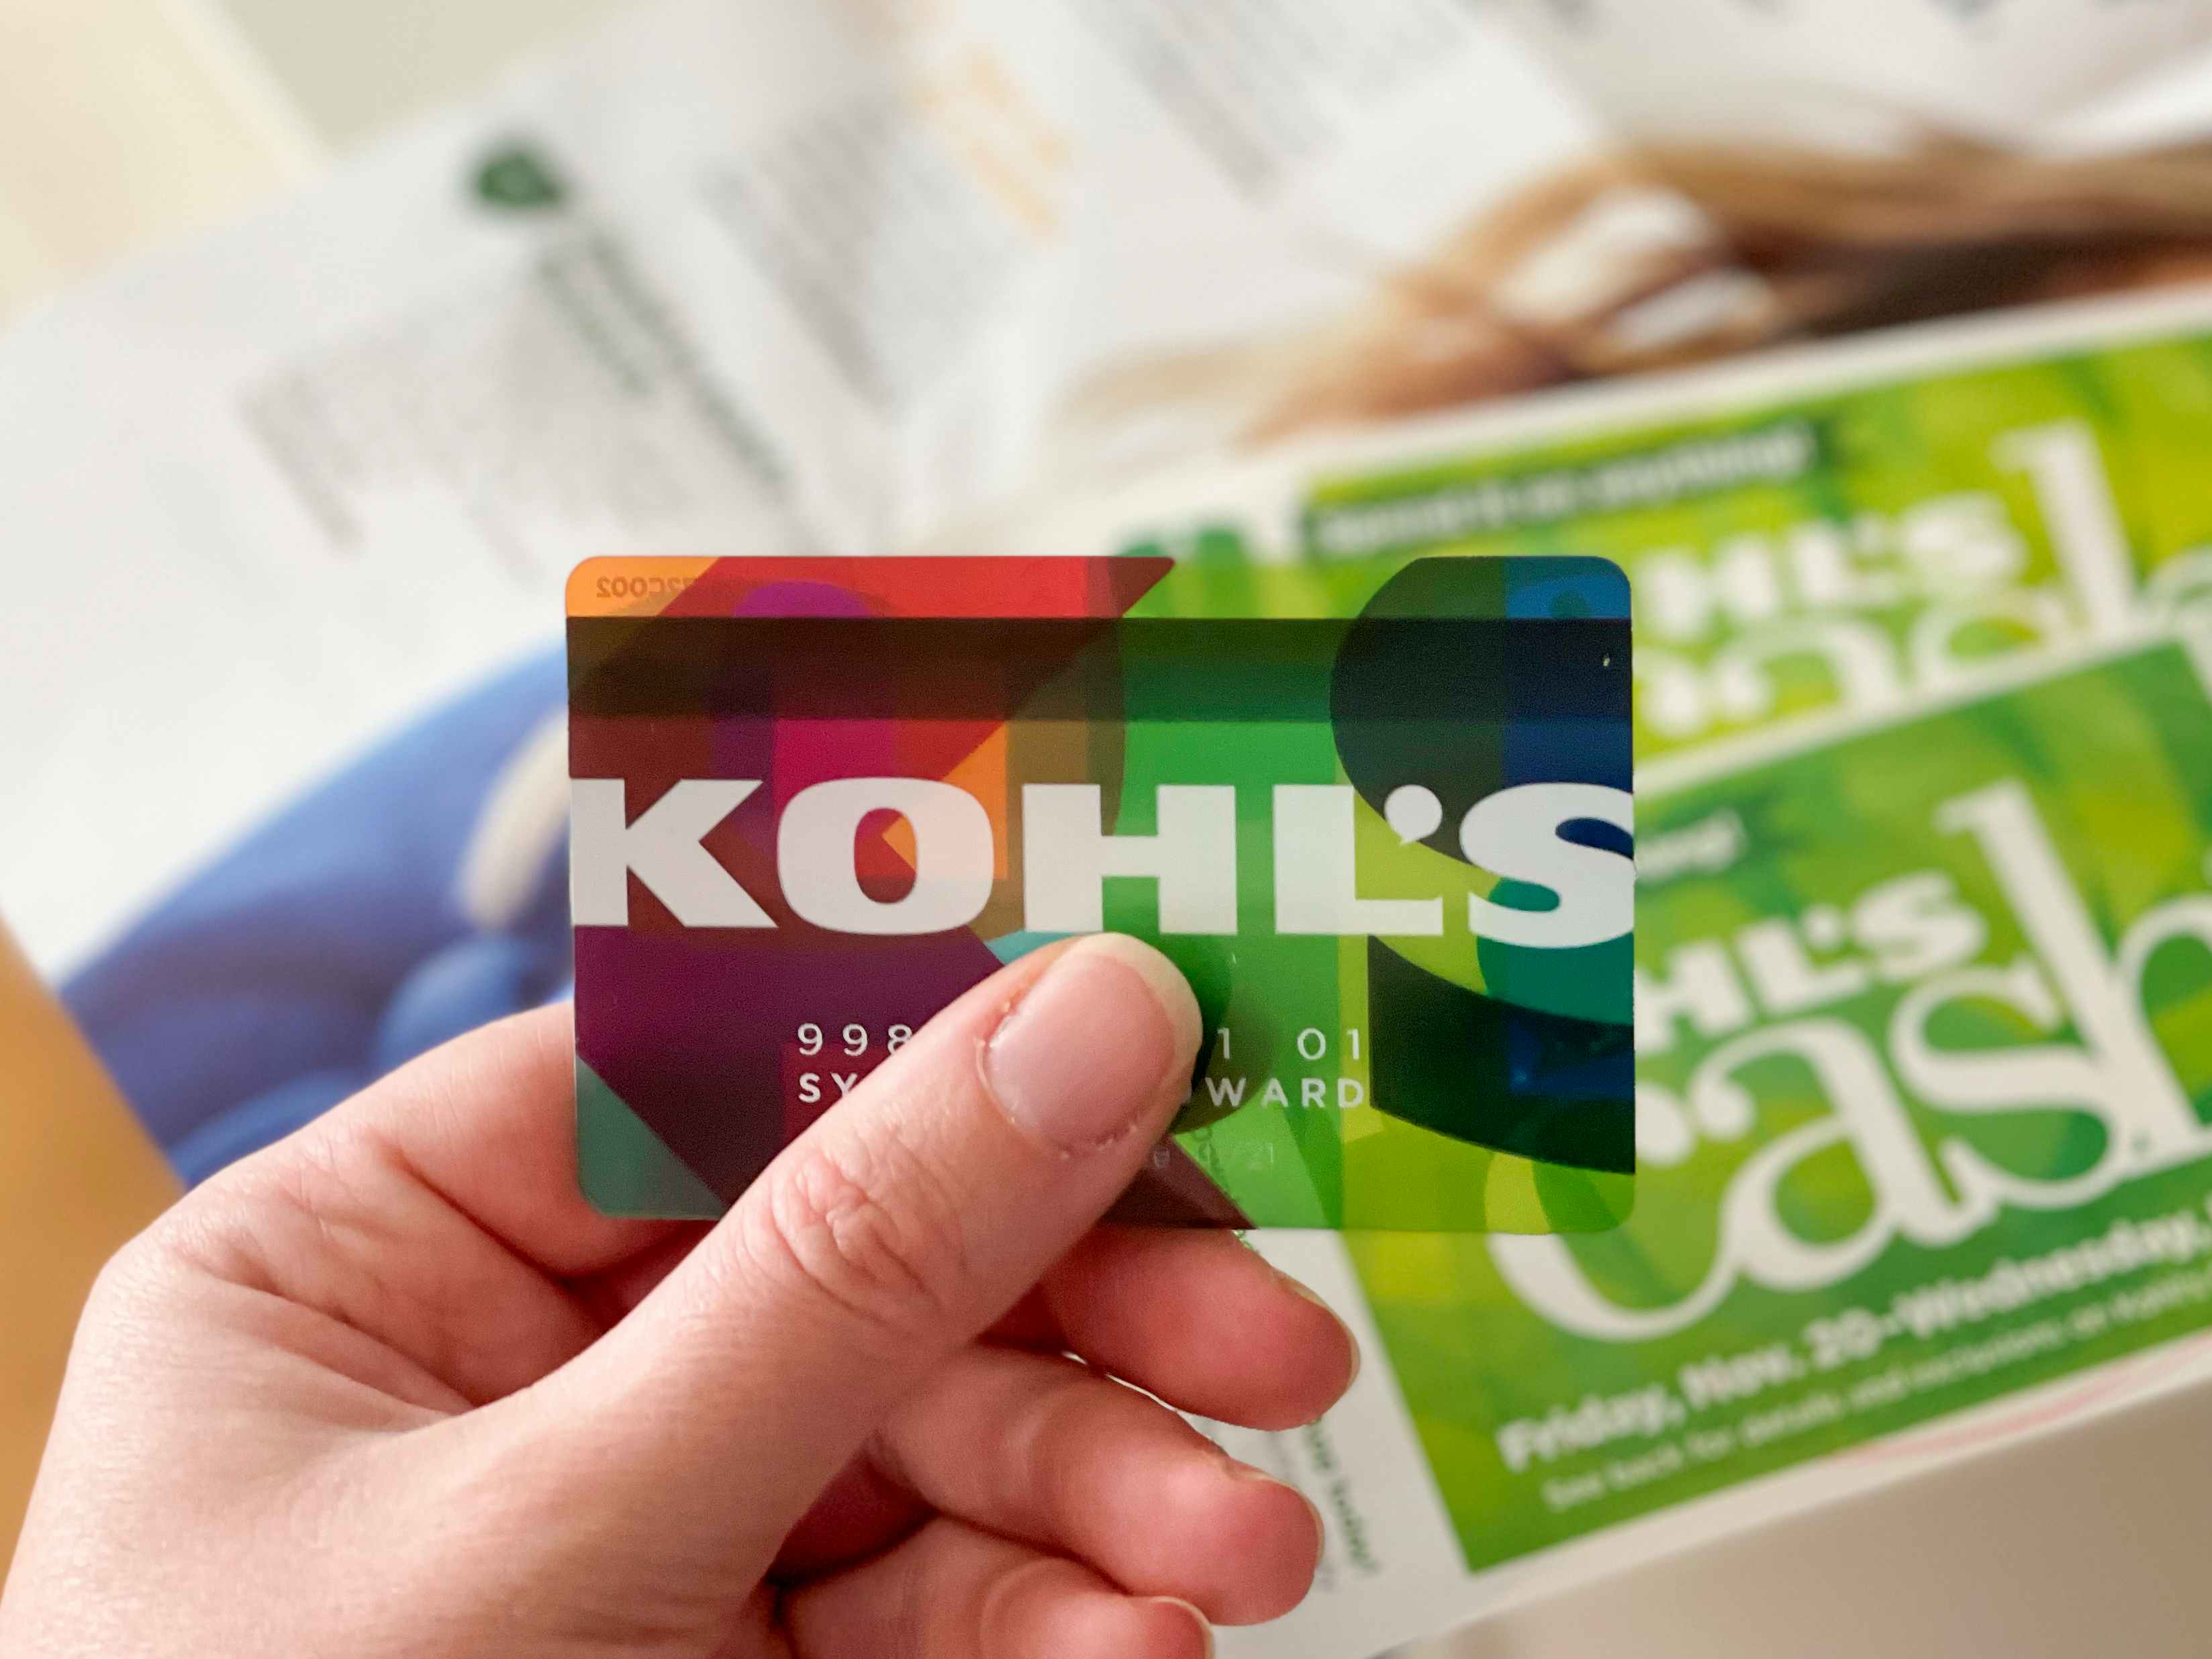 Printable Coupons: Kohls Coupons  Kohls coupons, Free printable coupons,  Printable coupons